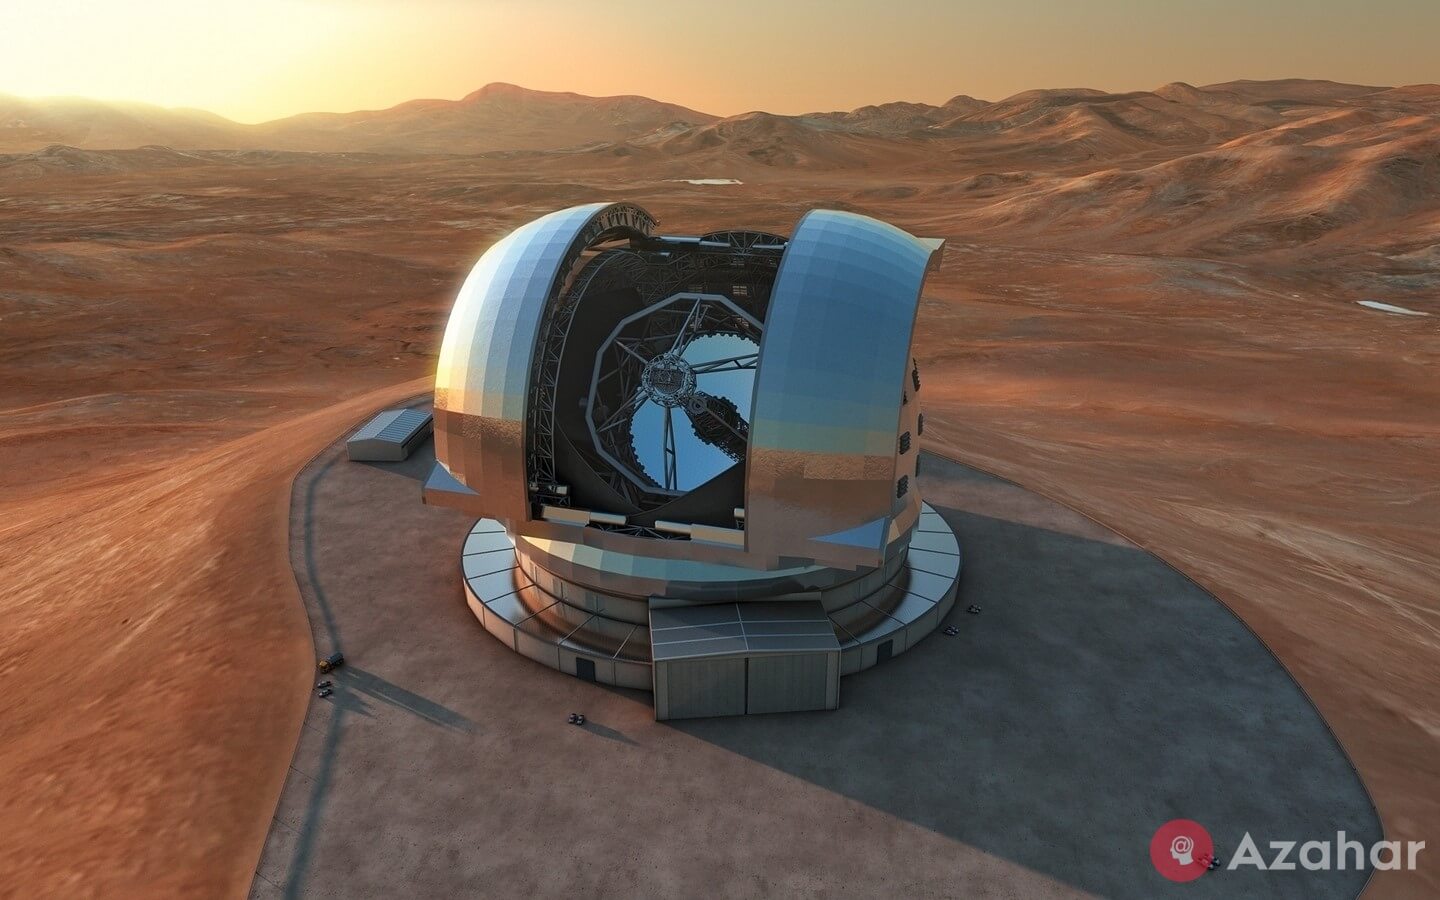 Extremely Large Telescope